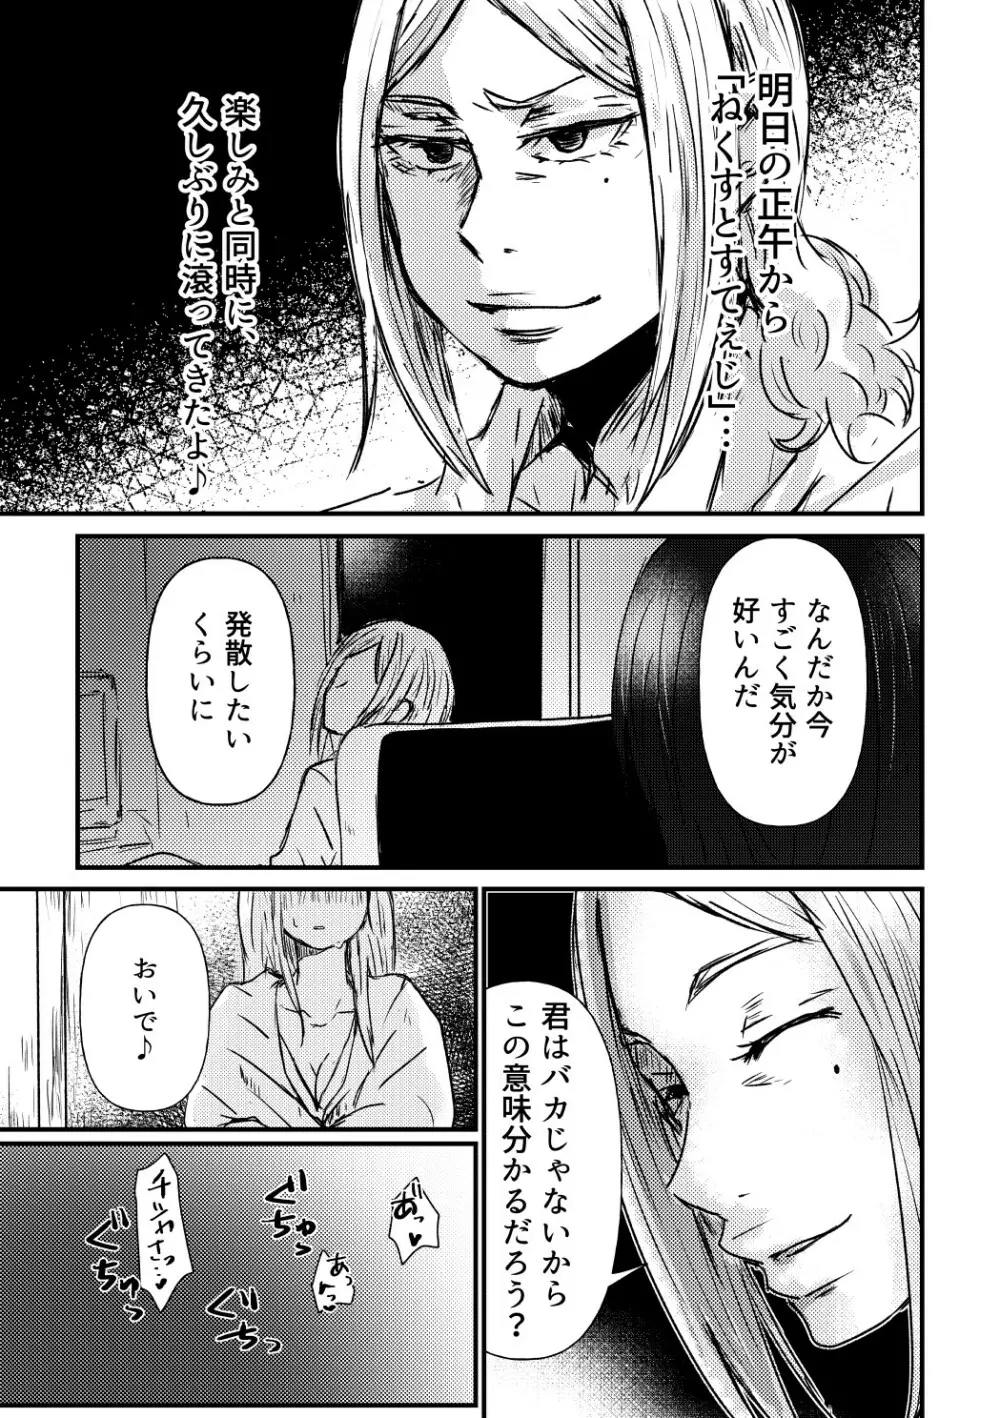 【R18夢漫画】チシヤが発散する話 3ページ